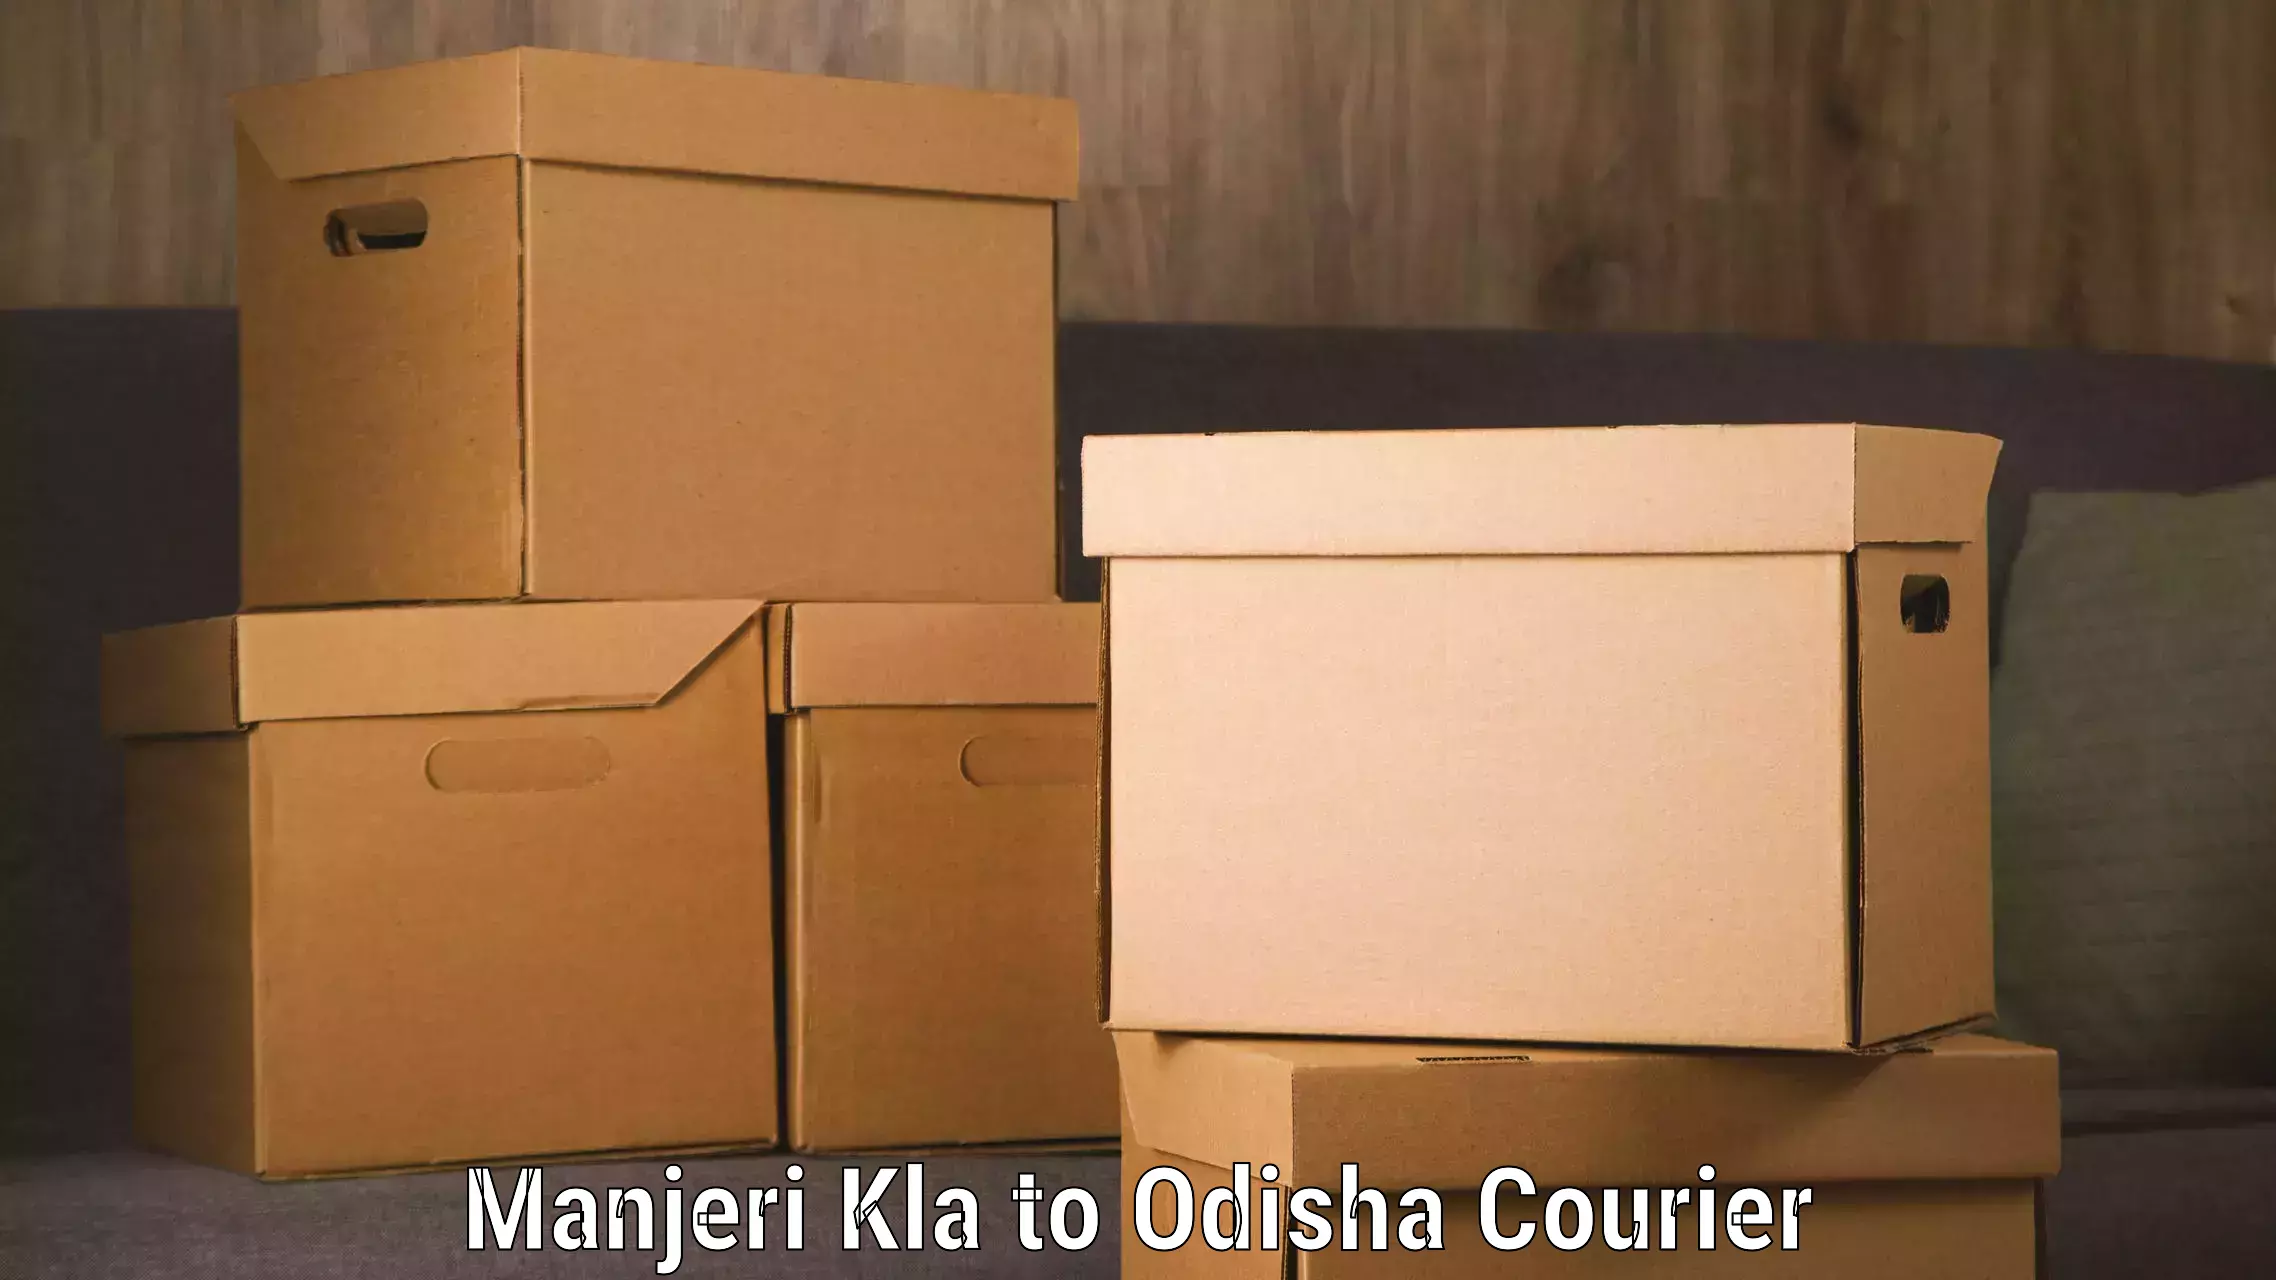 End-to-end delivery Manjeri Kla to Telkoi